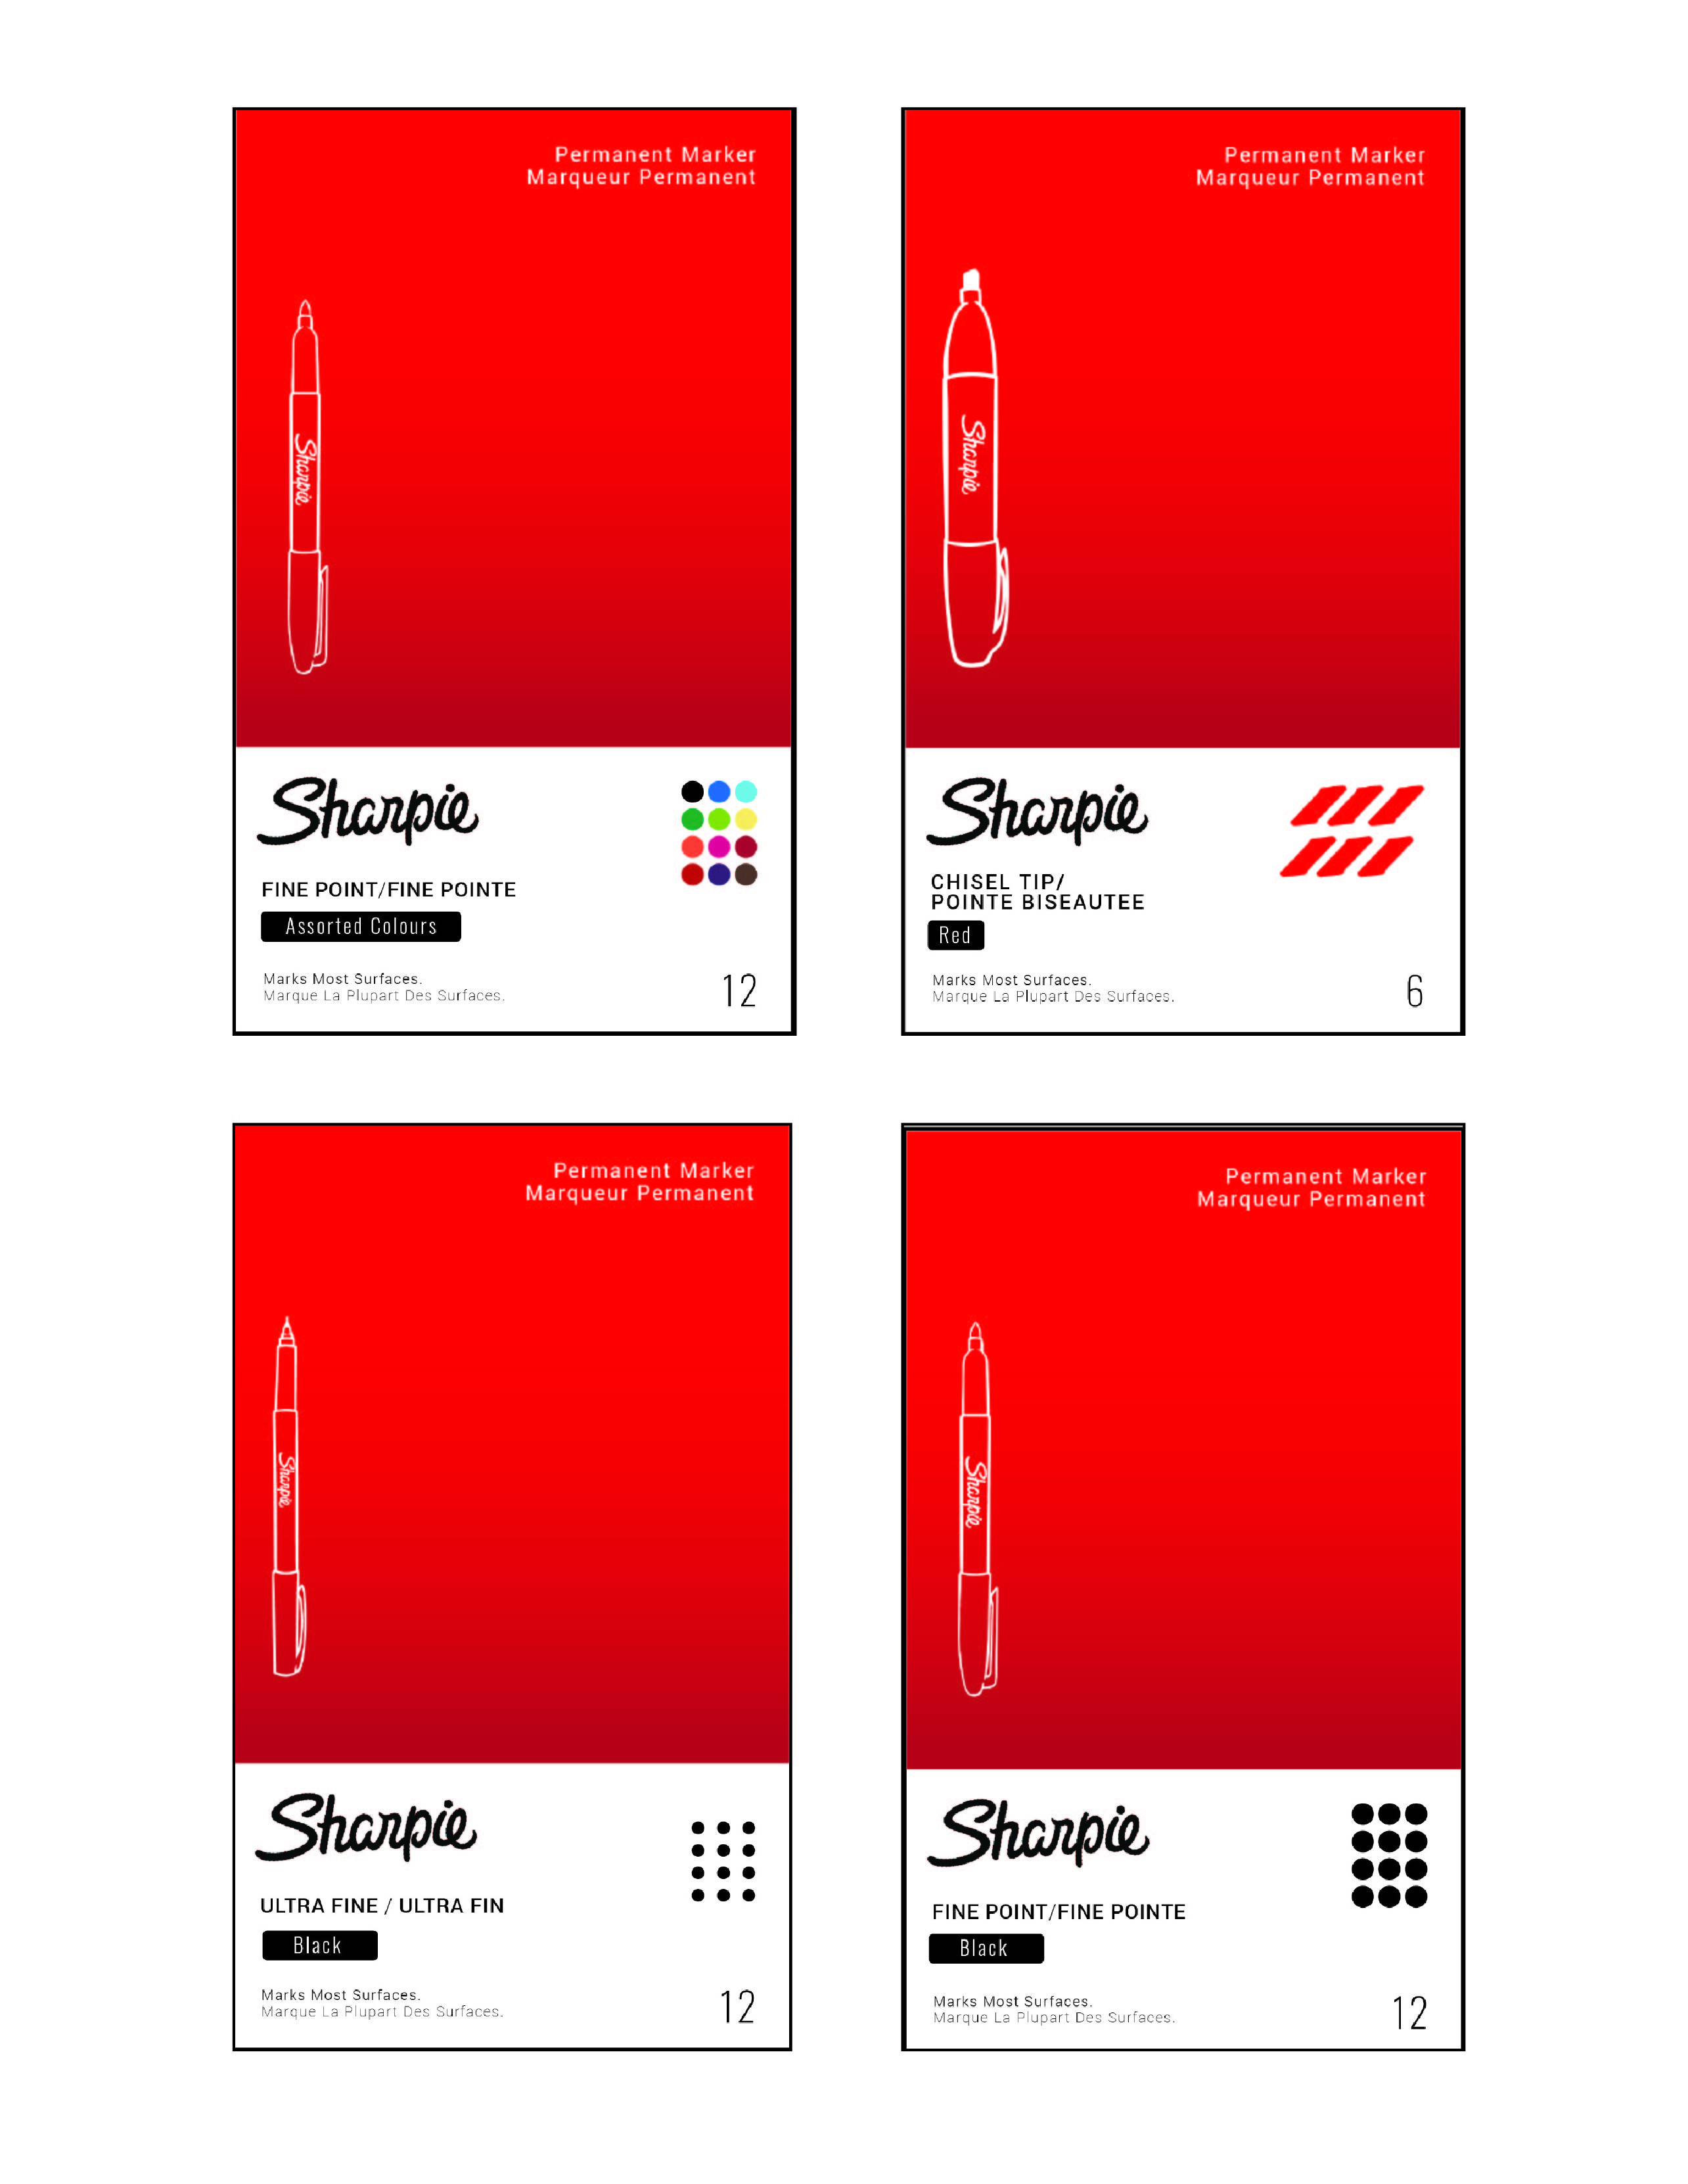 Sharpie Package Re-Design